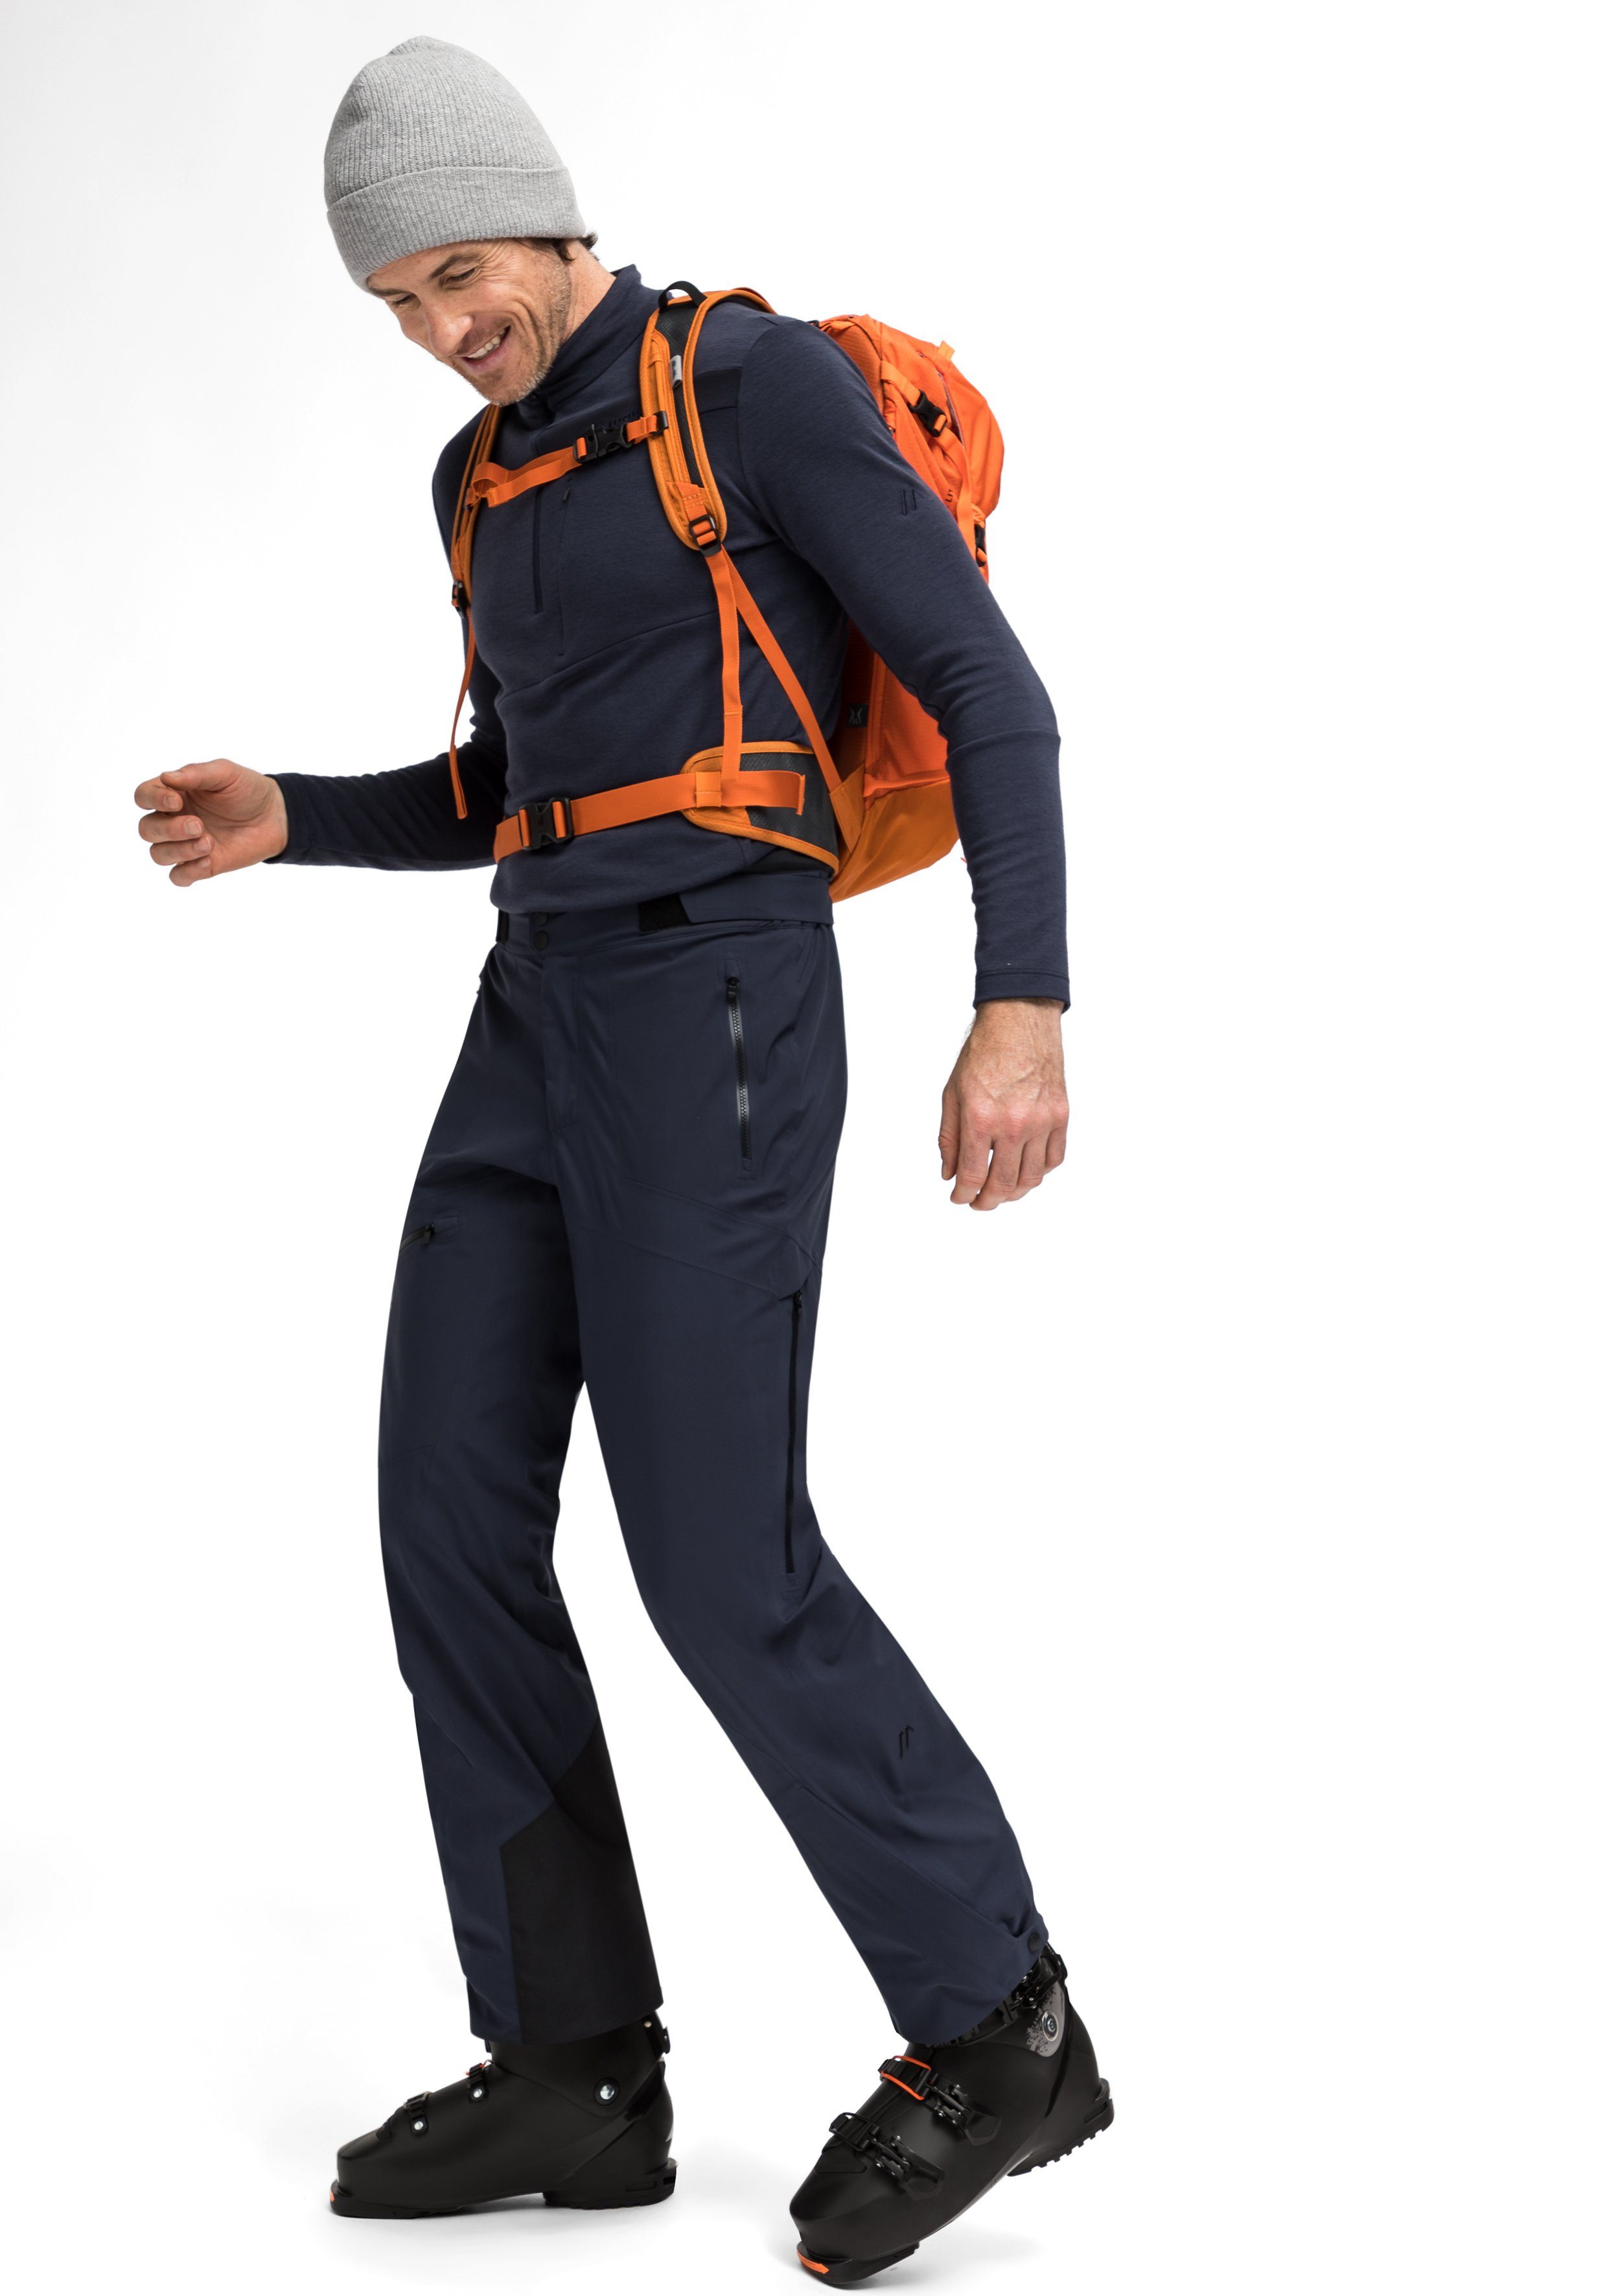 Maier Sports Funktionshose Liland P3 3-Lagen-Hose M anspruchsvollen für Outdoor-Einsatz Vielseitige Pants